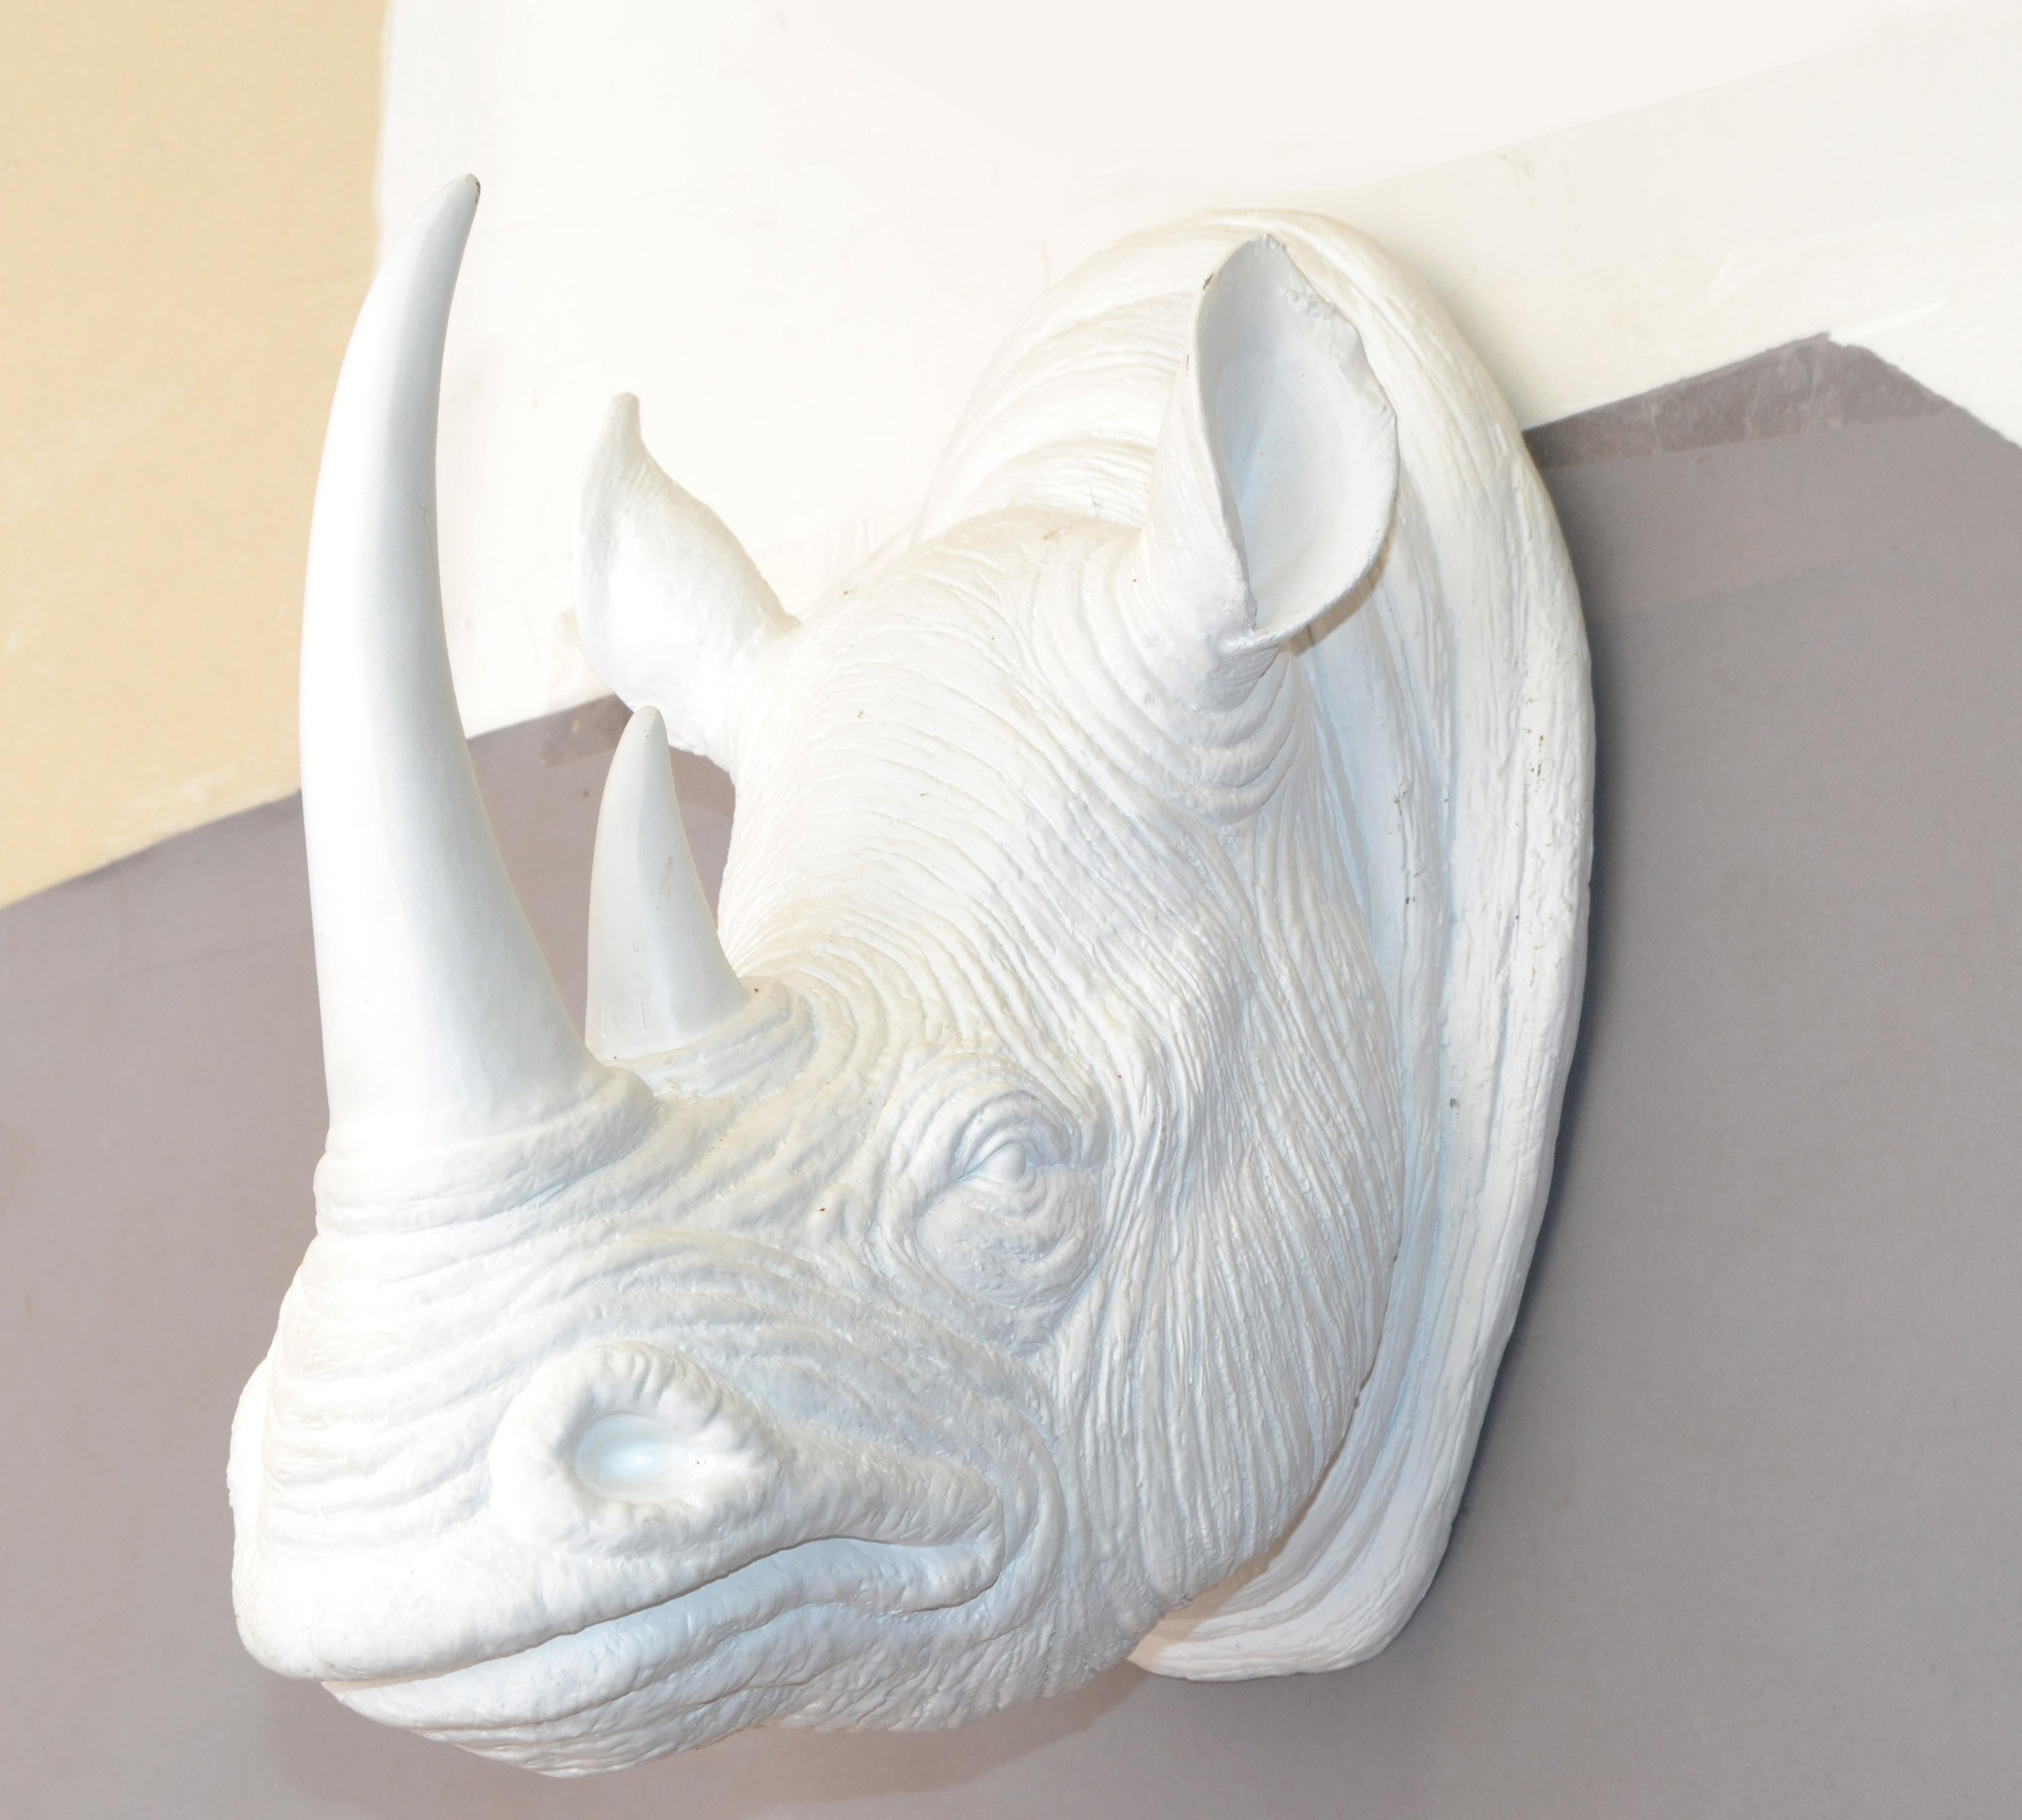 Ceci est une fausse tête de rhinocéros taxidermie, fausse tête de trophée, sculpture animale murale faite de résine et peinte dans une finition émaillée blanc cassé.
Notez les vraies rides de la peau et les détails des oreilles et du nez du